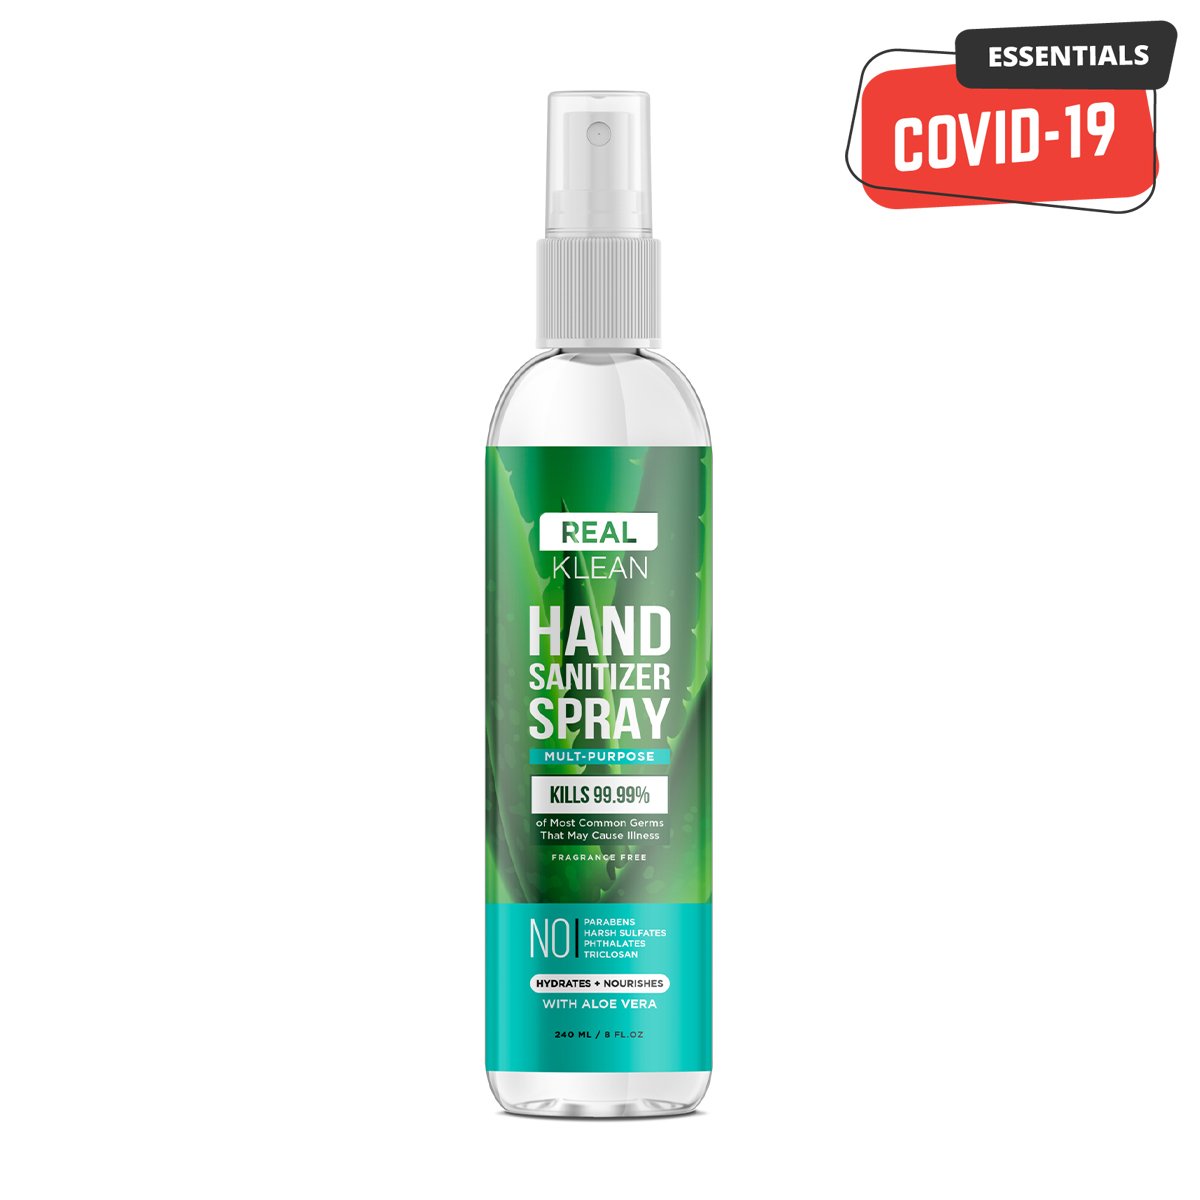 THINK KLEAN | Hand Sanitizer Spray - 8oz - 1